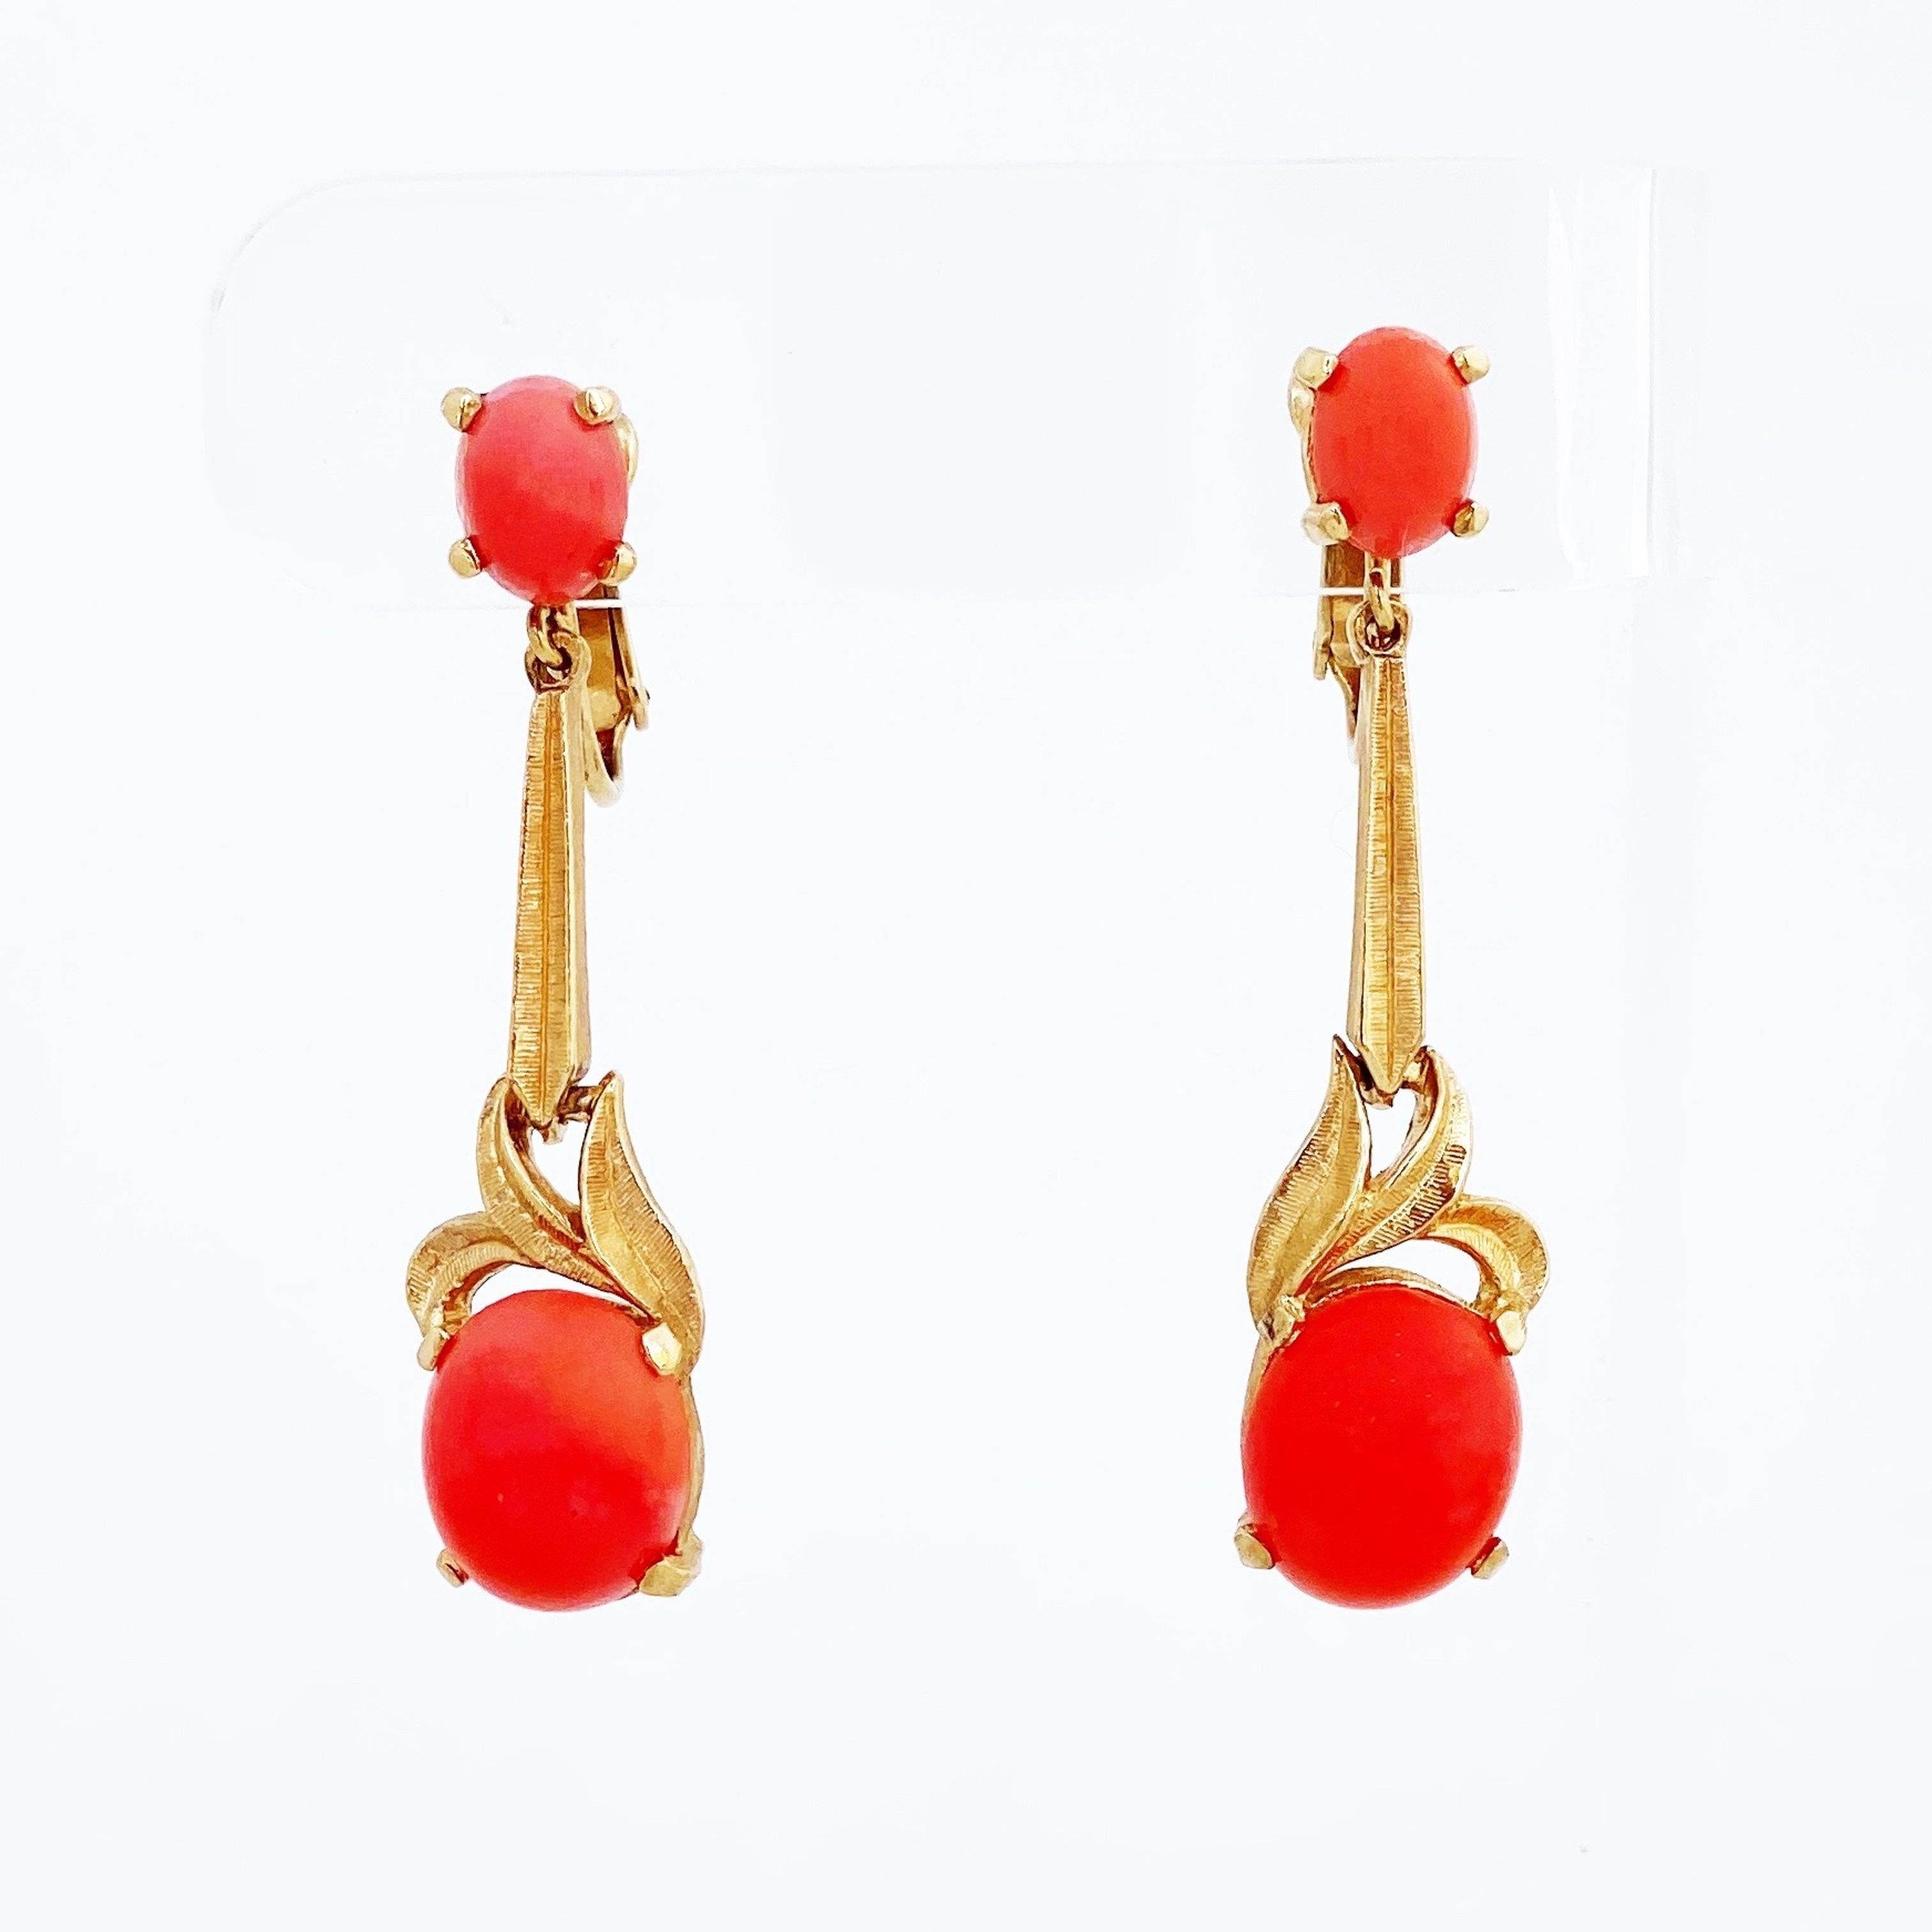 - Vintage item

- Each earring measurs 1.75